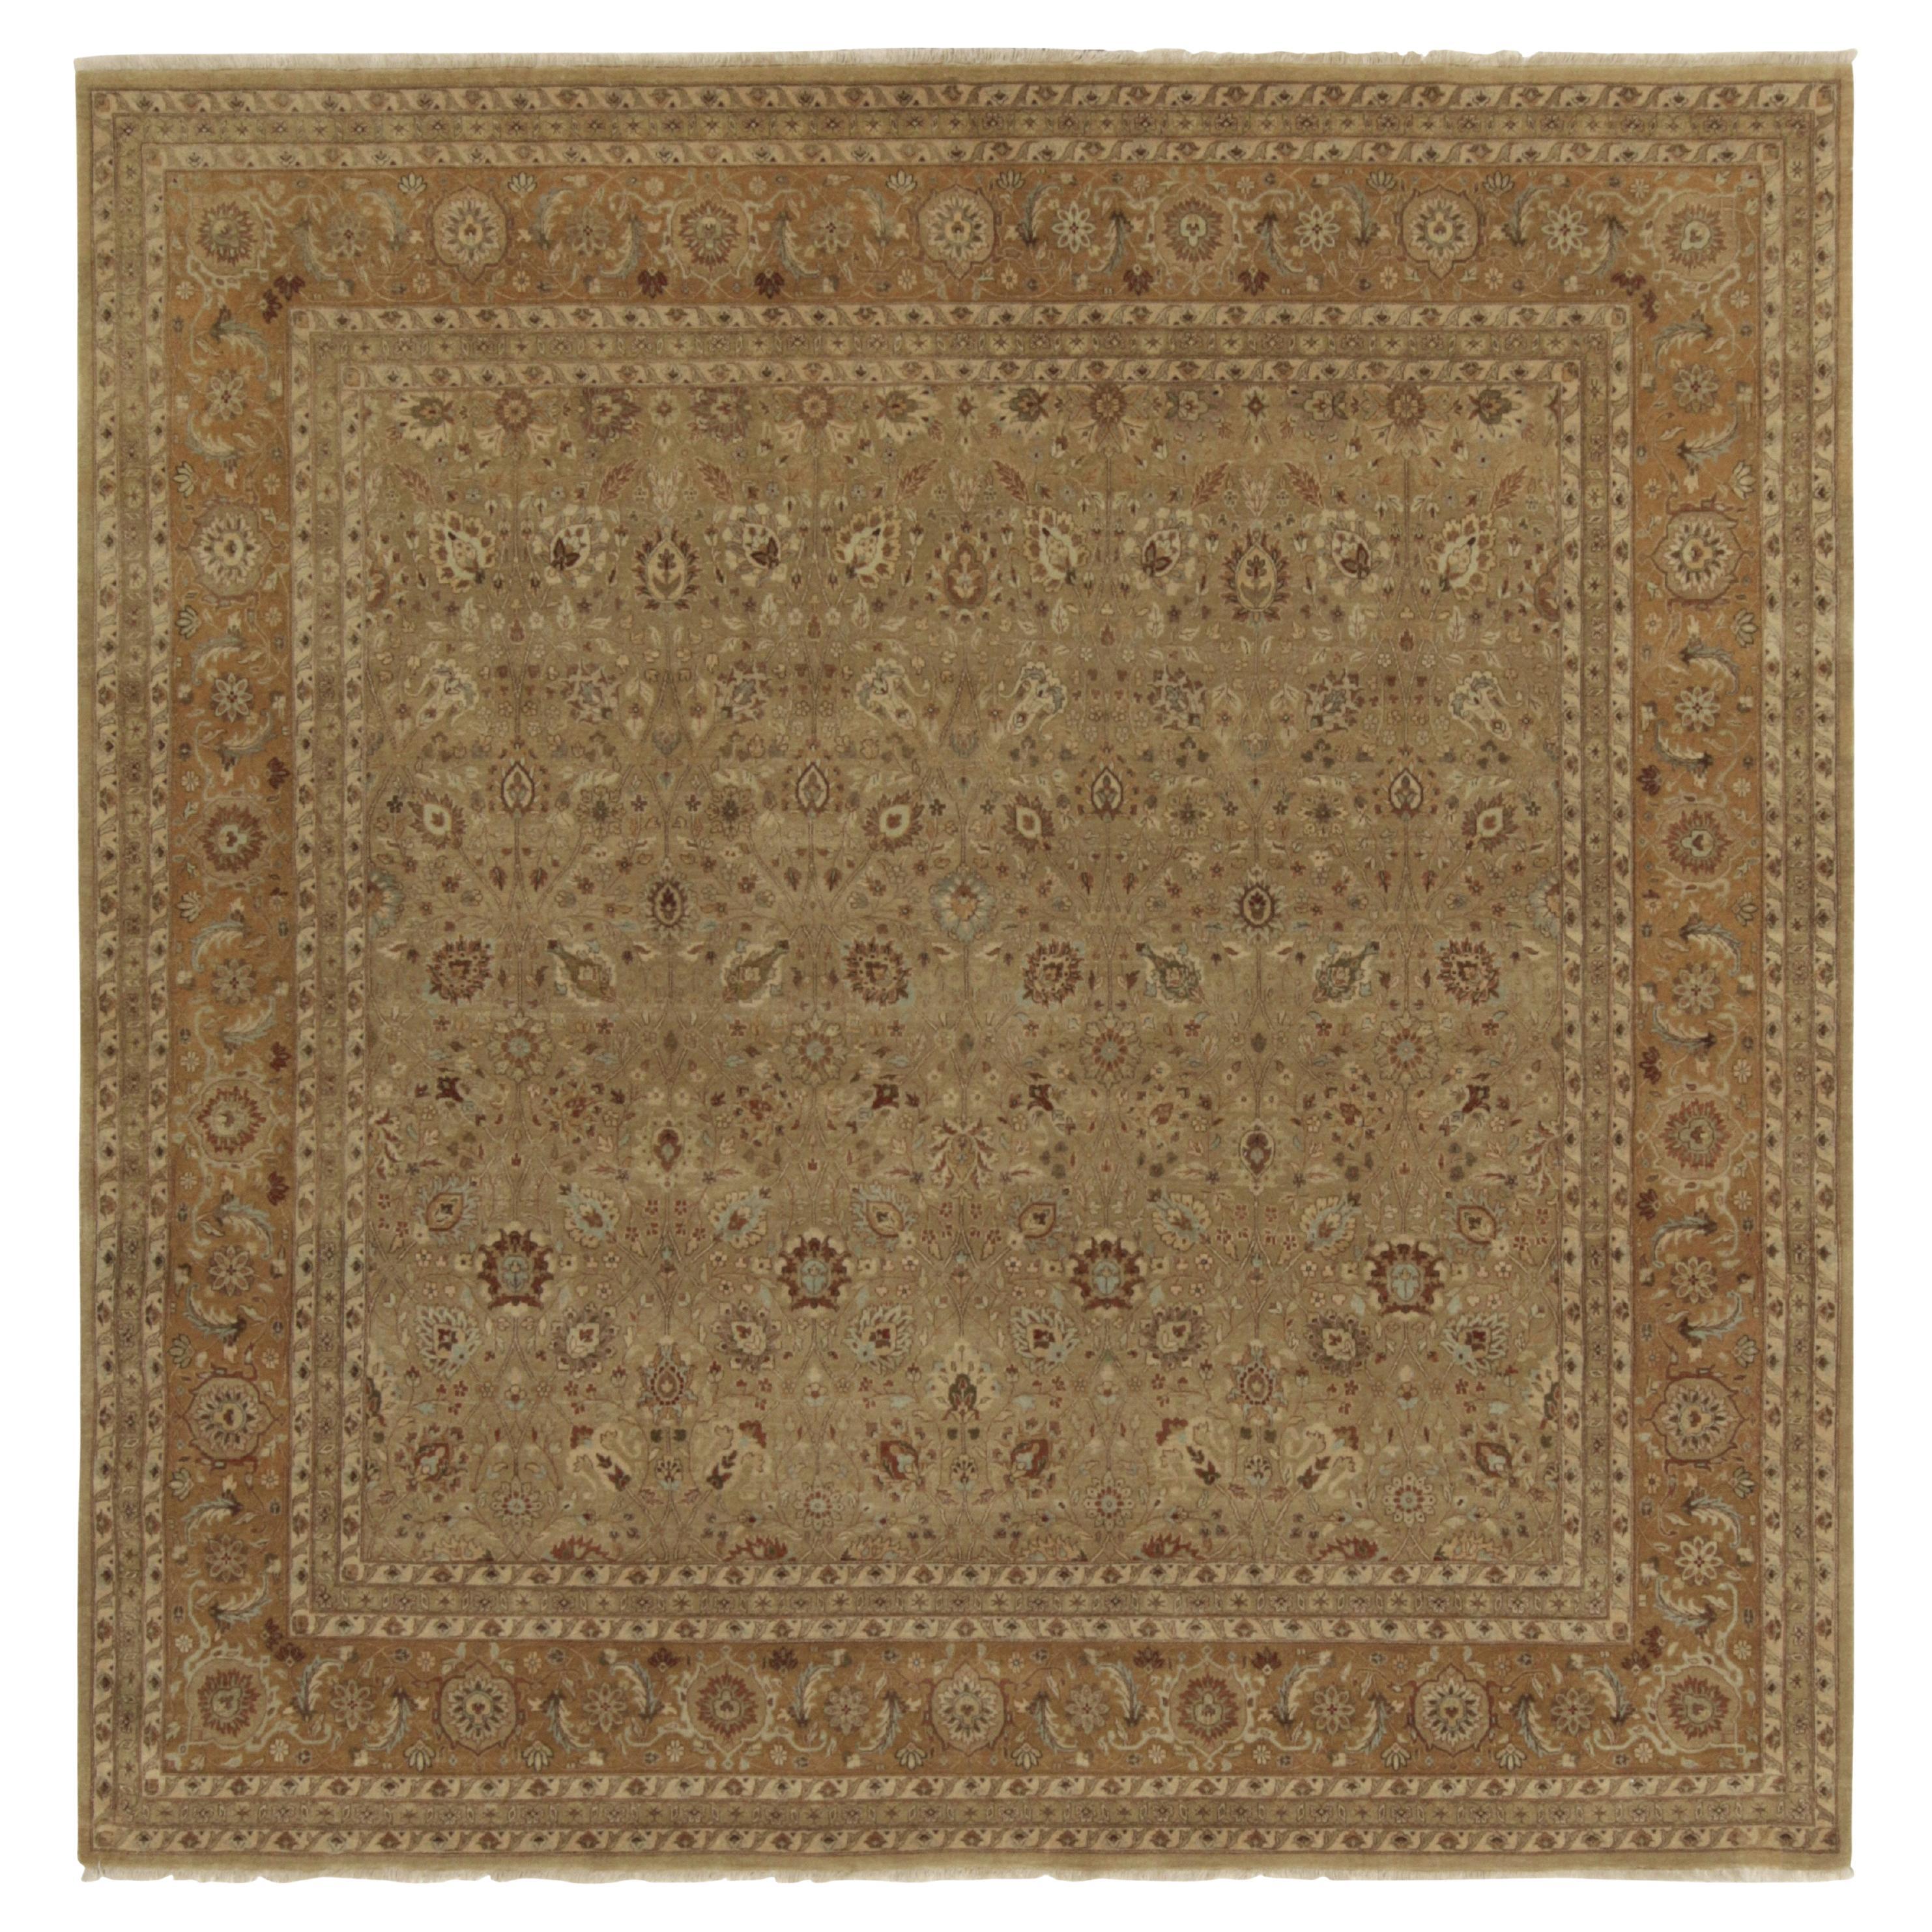 Antiker quadratischer Teppich im persischen Stil von Teppich &amp; Kilims mit beige-braunen Blumenmuster